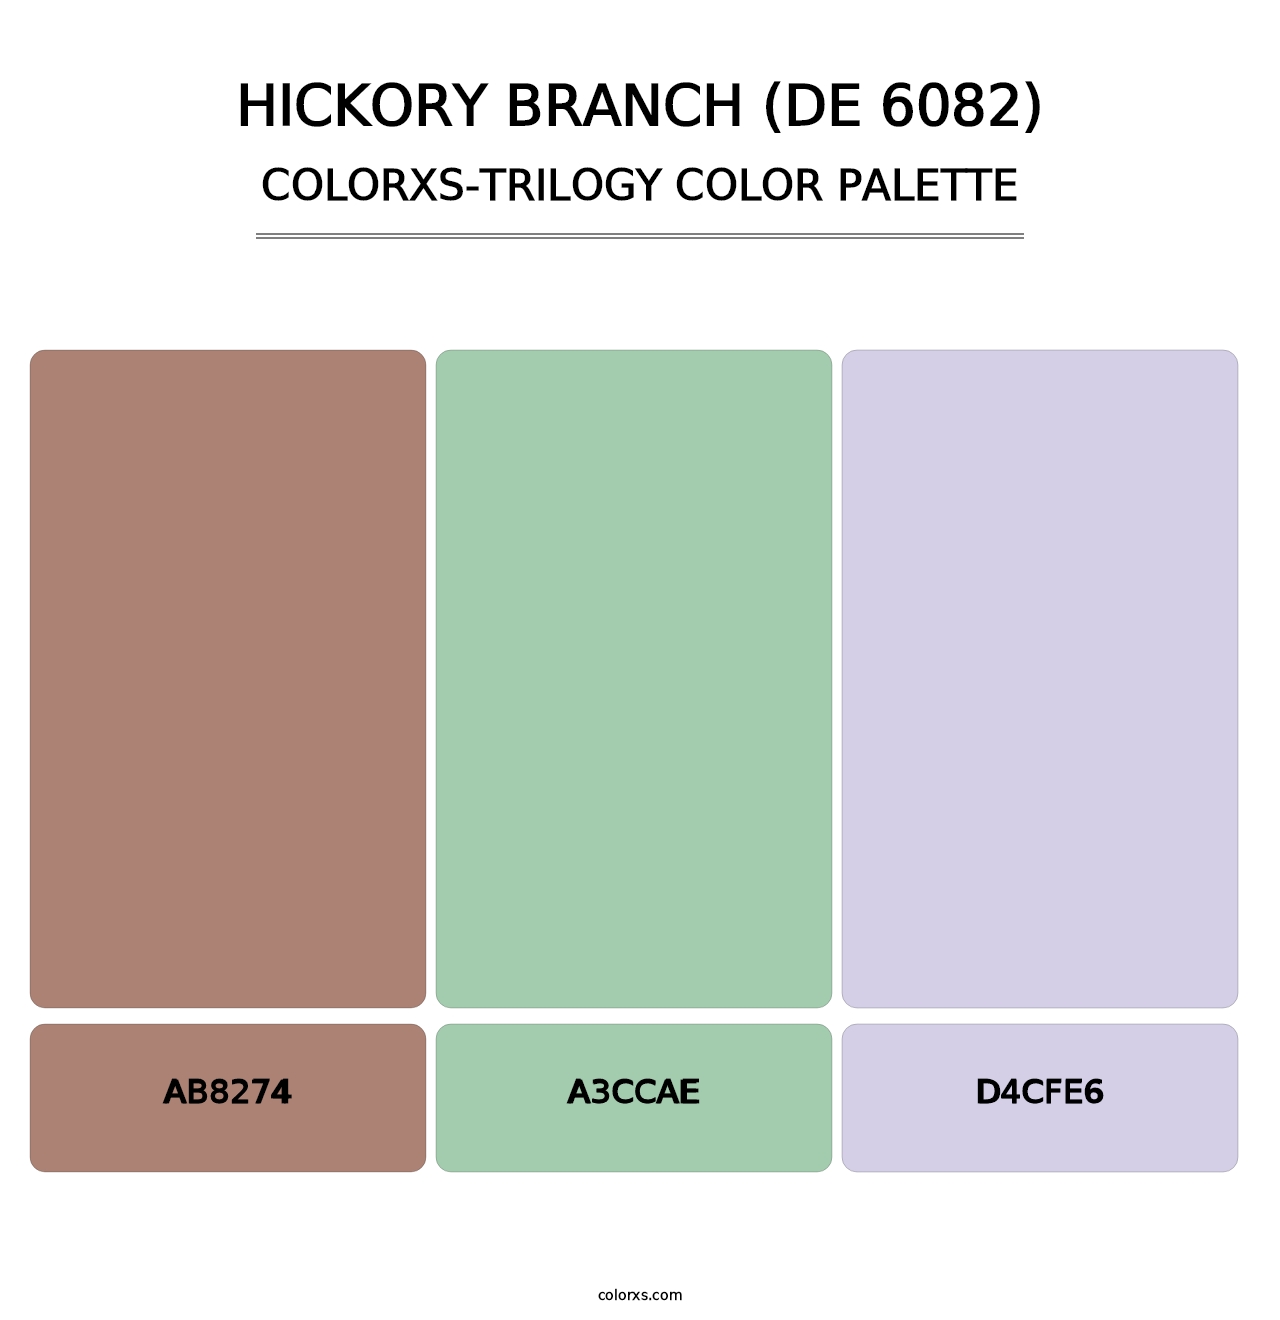 Hickory Branch (DE 6082) - Colorxs Trilogy Palette